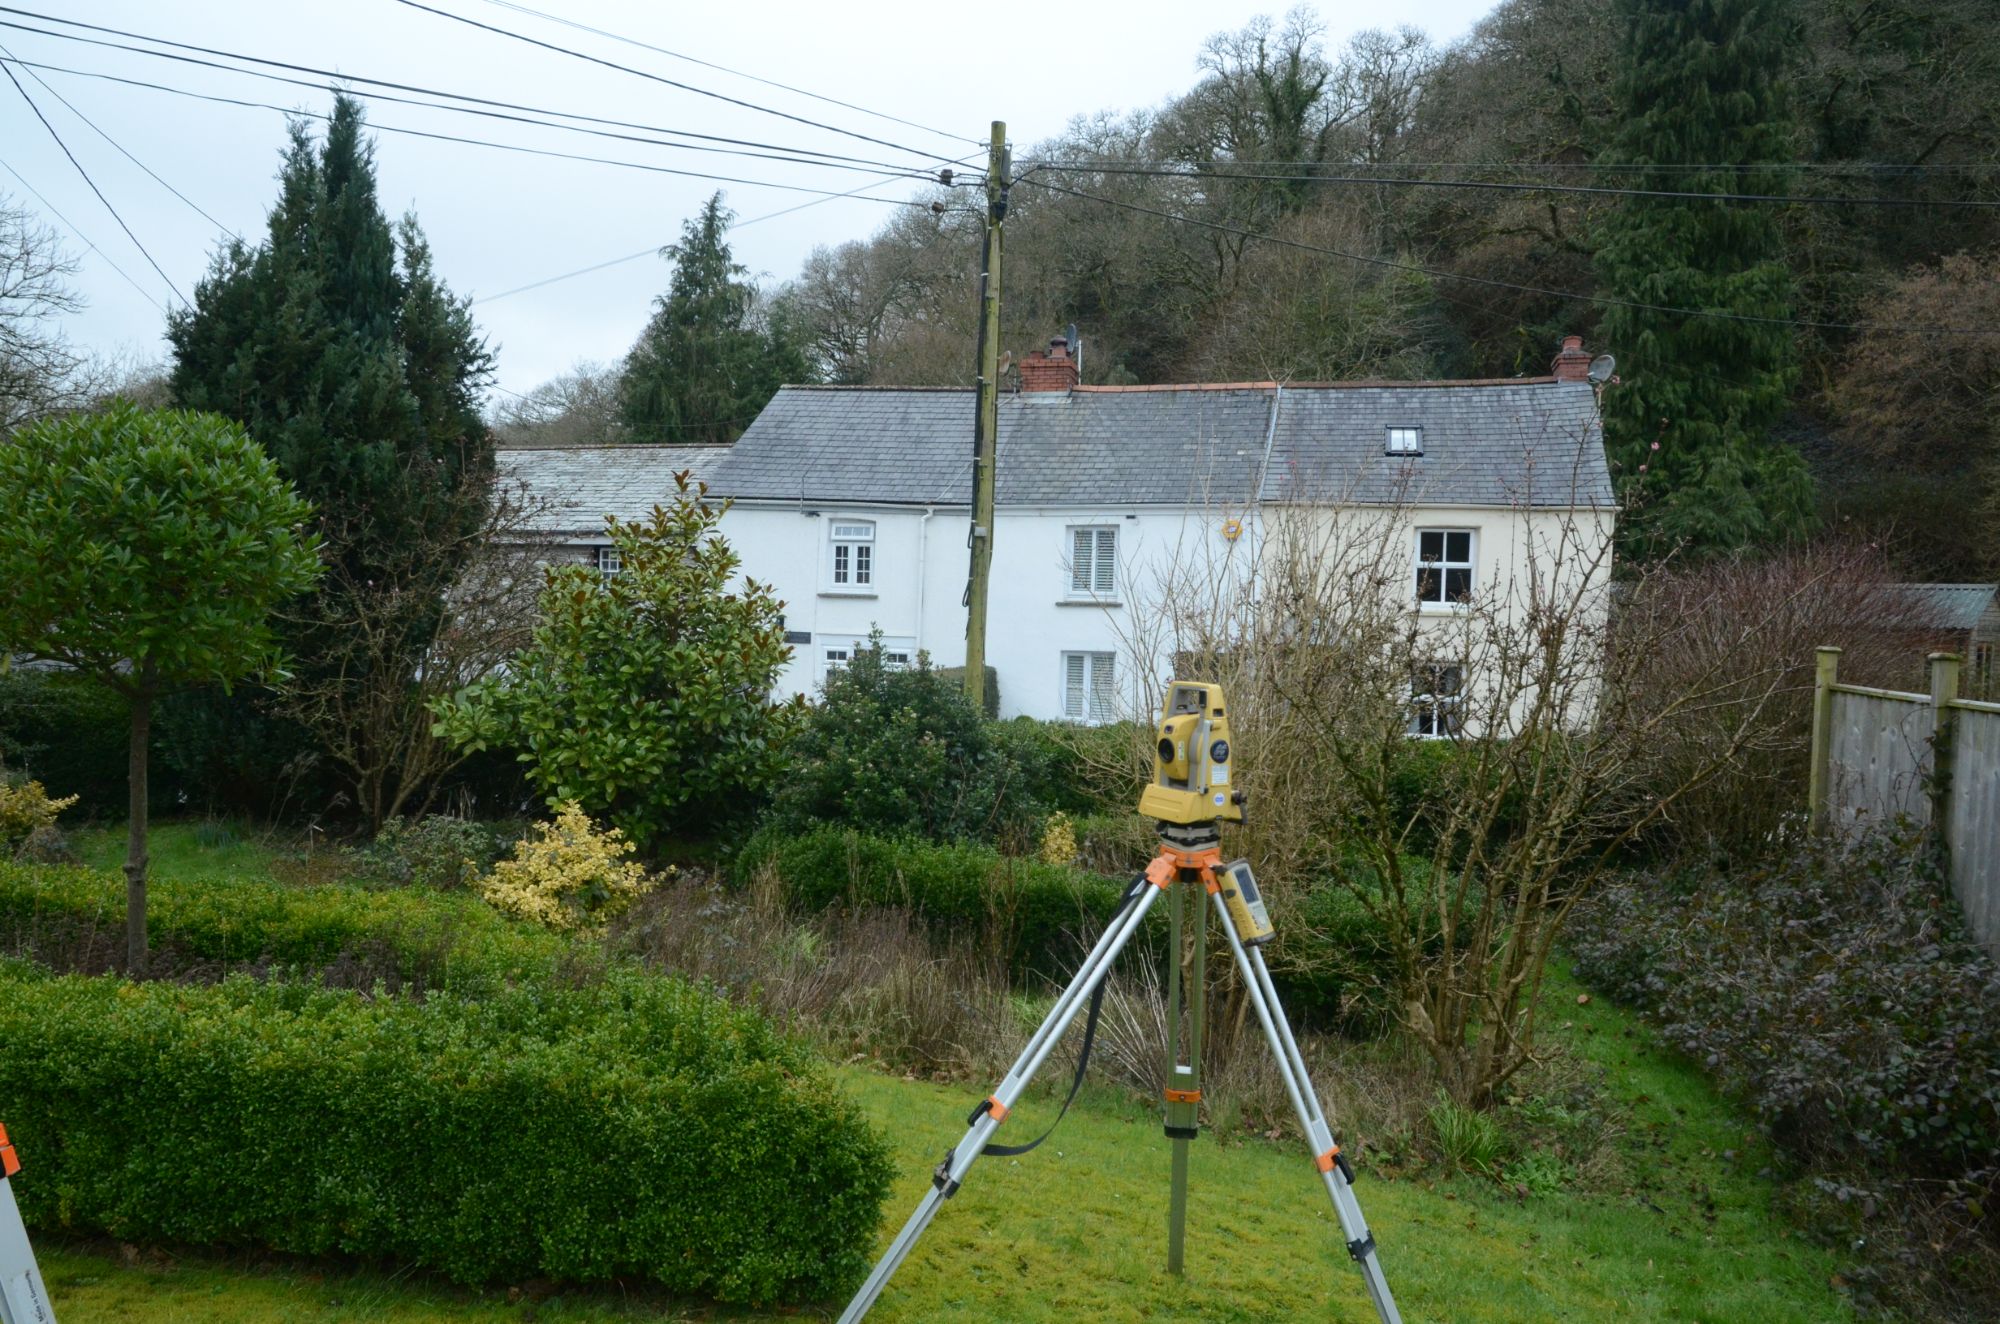 Land Surveying in Devon